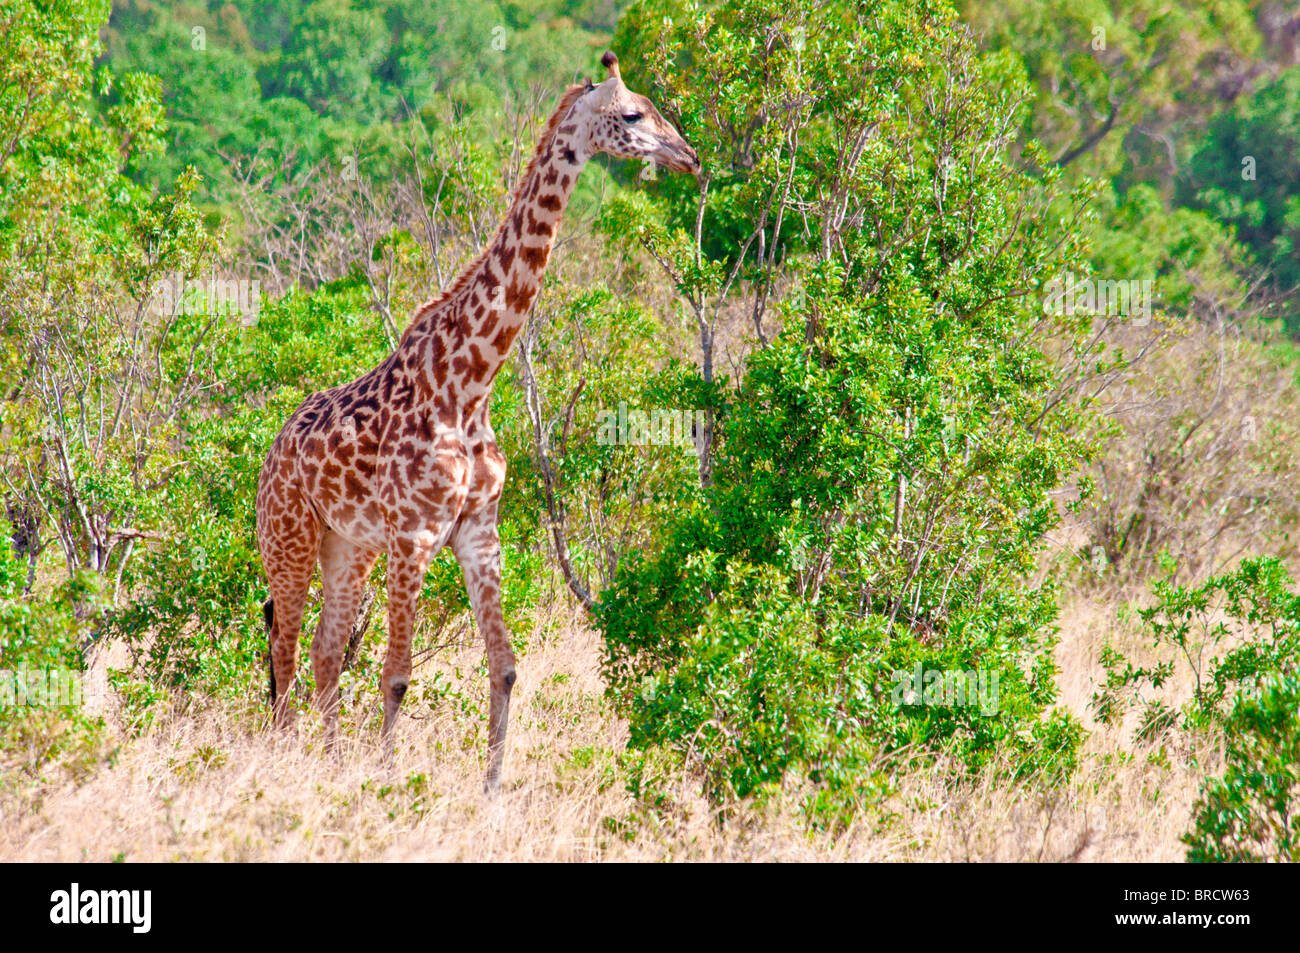 Masai Giraffe, Giraffa camelopardalis, Masai Mara National Reserve, Kenya, Africa Stock Photo